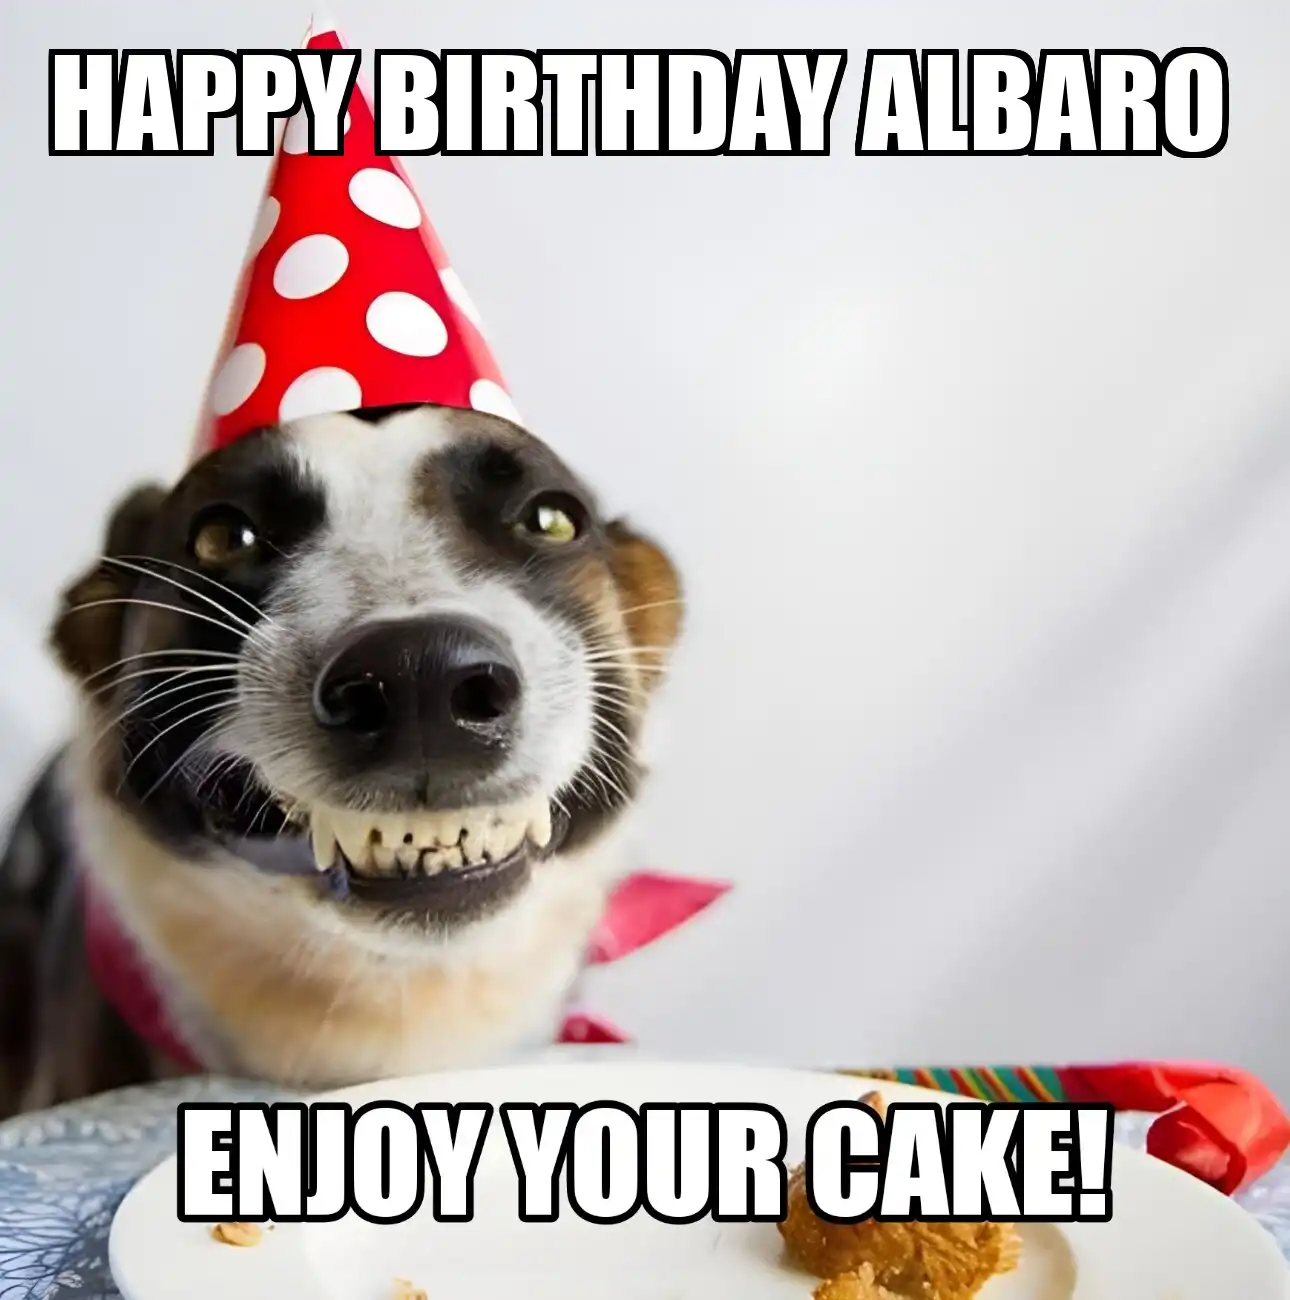 Happy Birthday Albaro Enjoy Your Cake Dog Meme